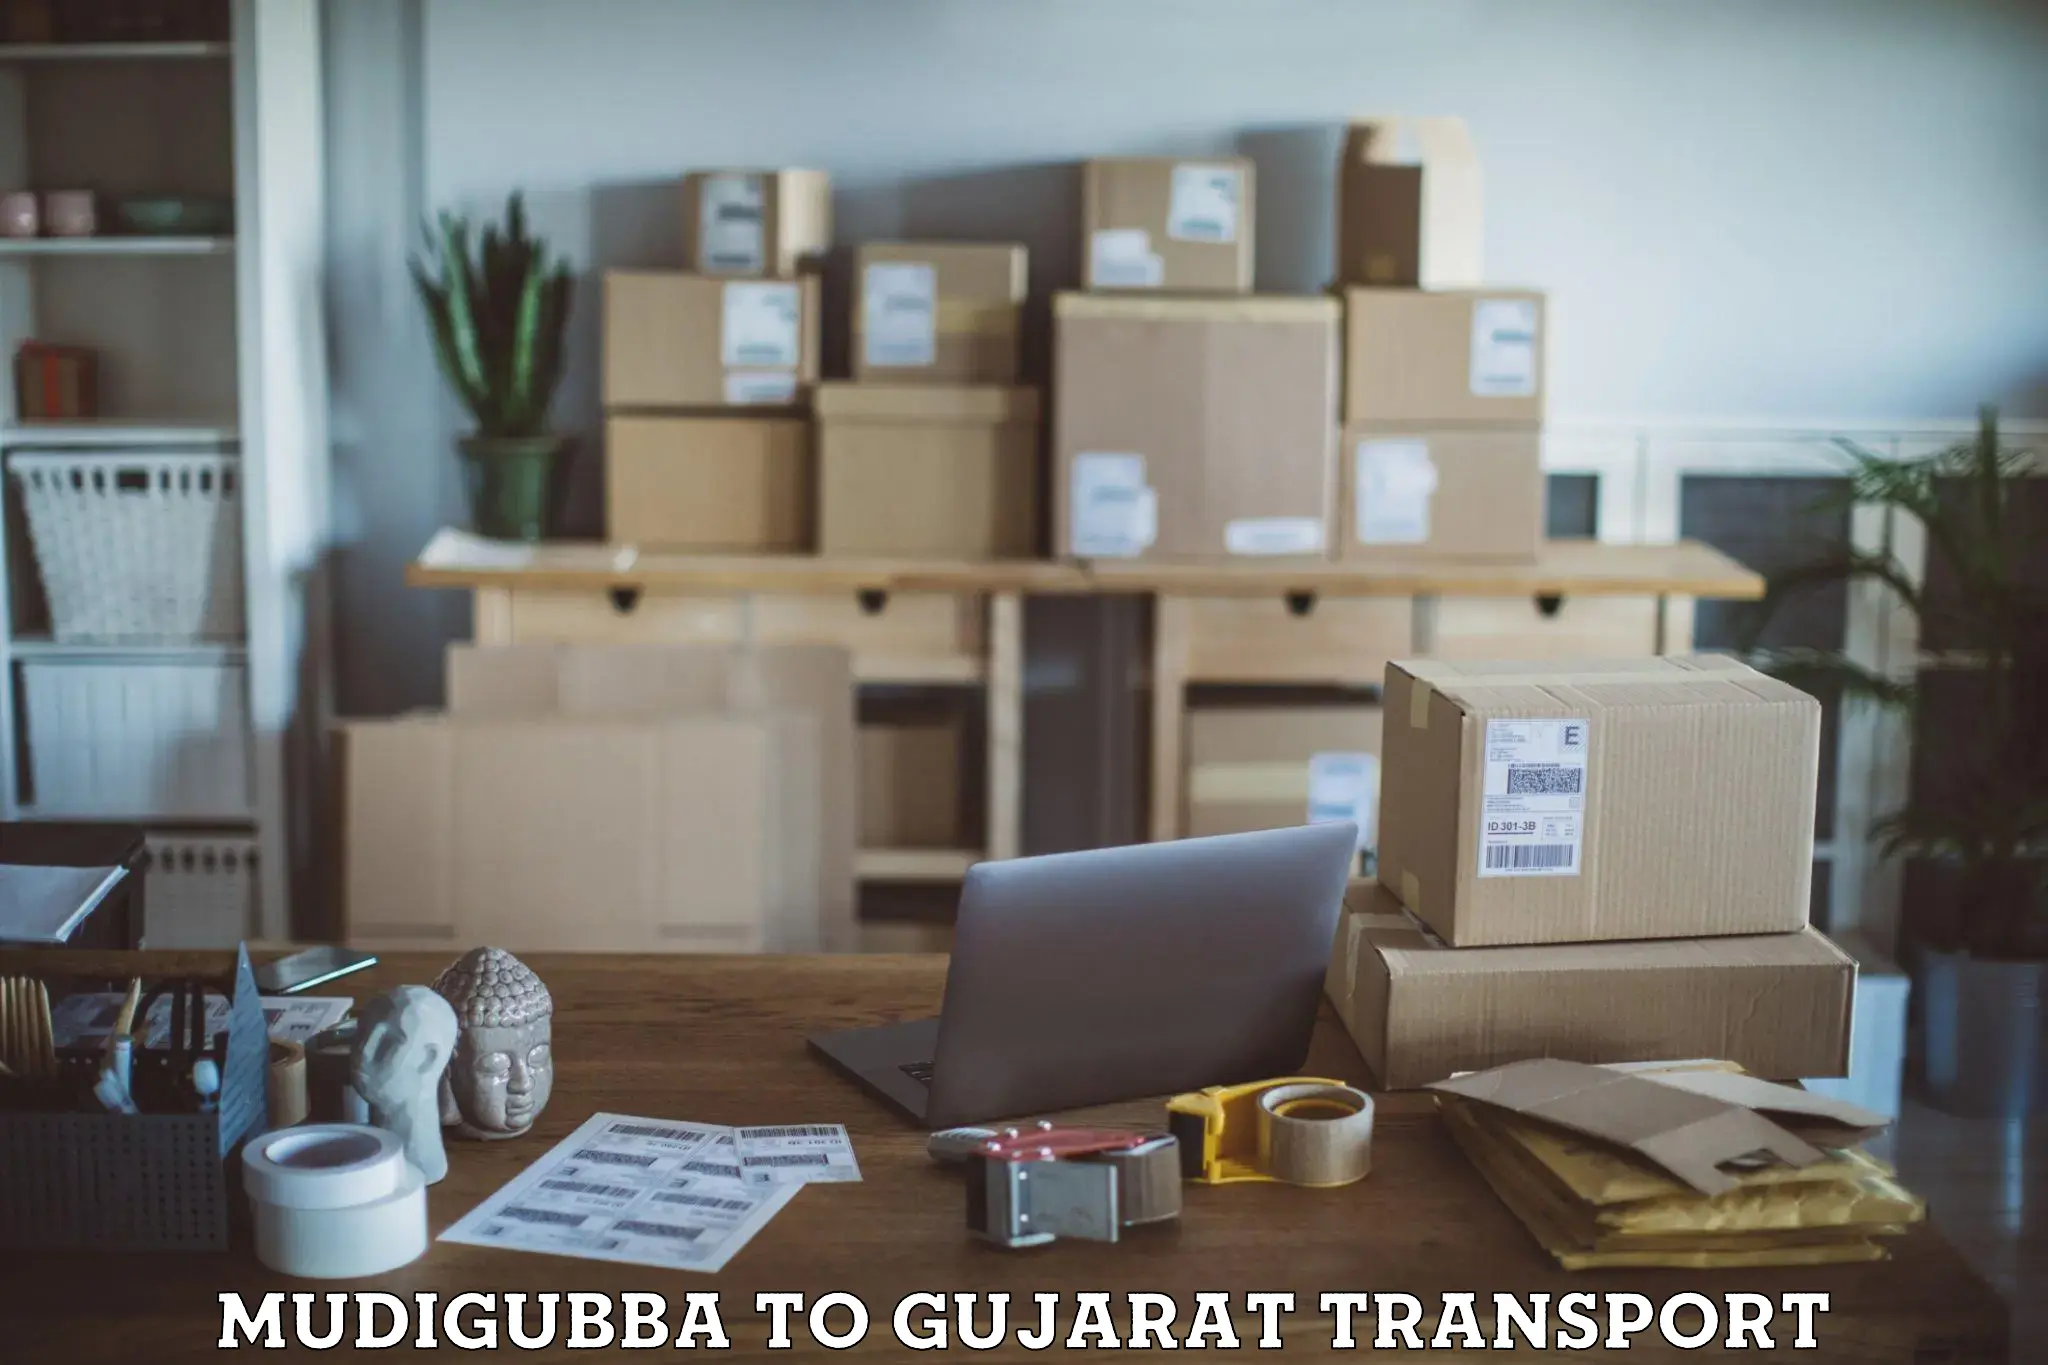 Delivery service Mudigubba to Gandhinagar